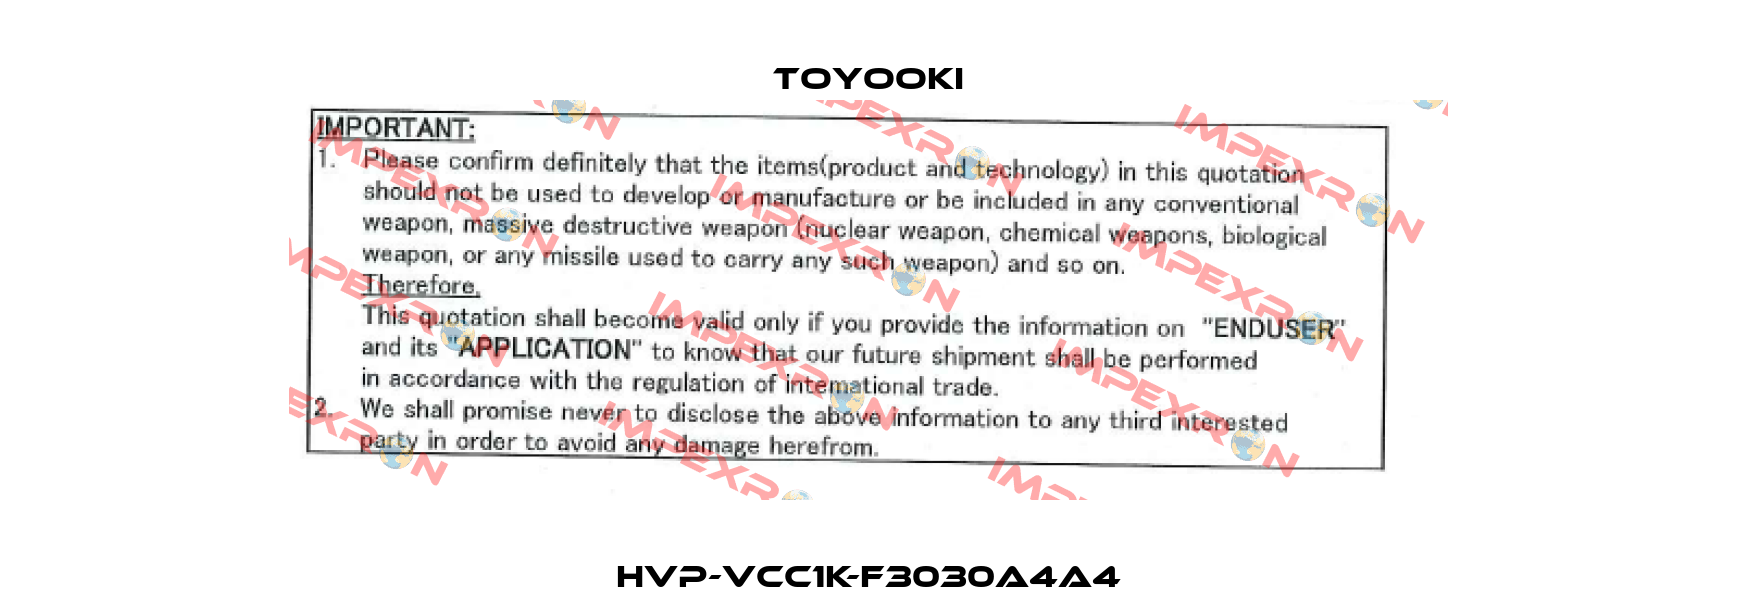 HVP-VCC1K-F3030A4A4 Toyooki